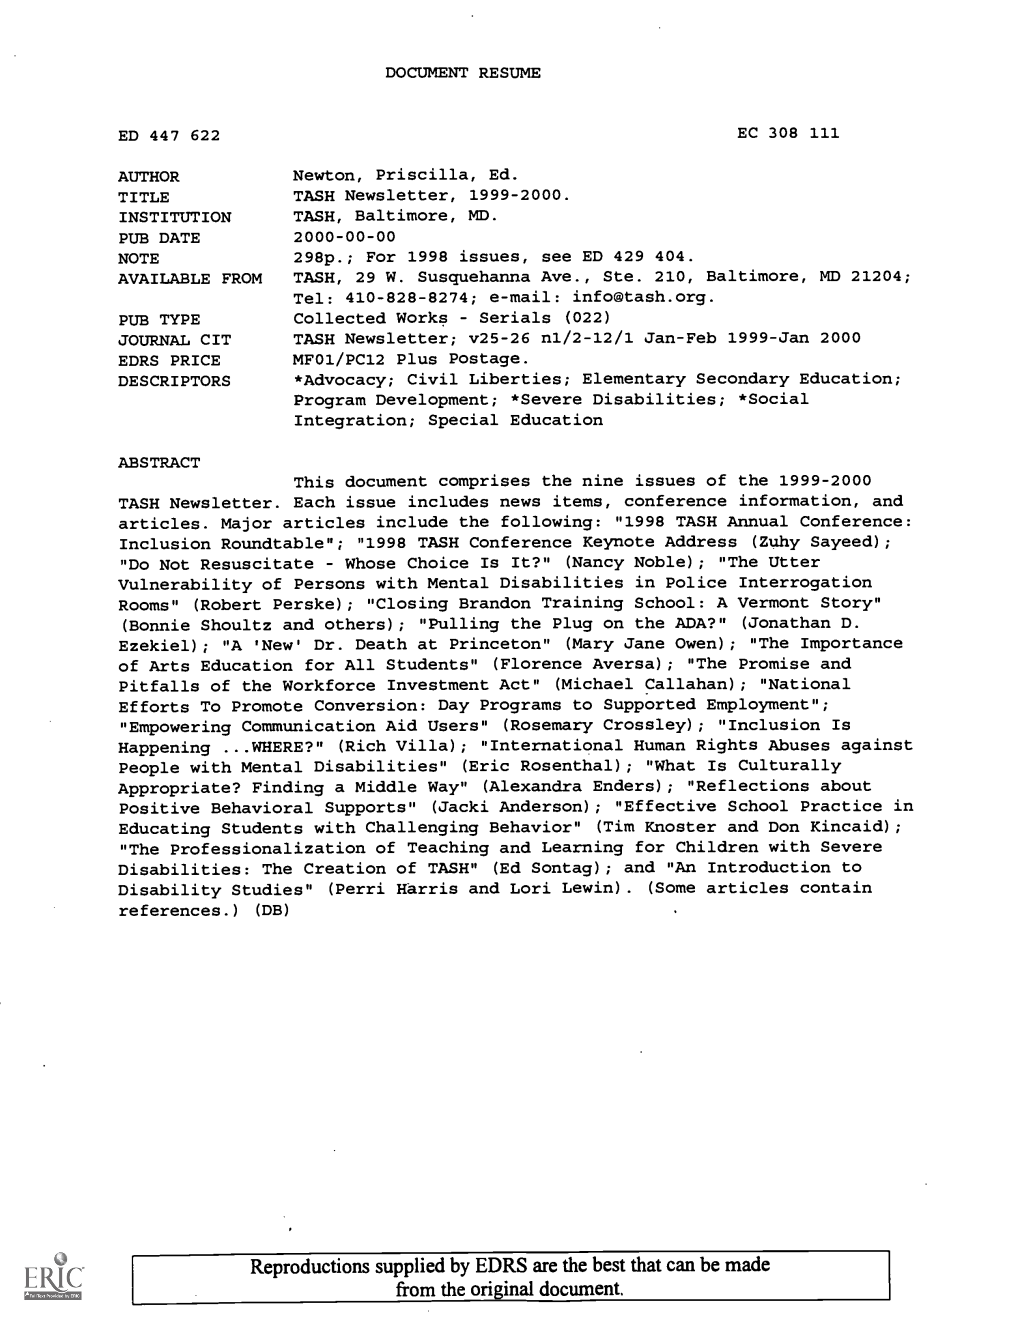 TASH Newsletter, 1999-2000. INSTITUTION TASH, Baltimore, MD